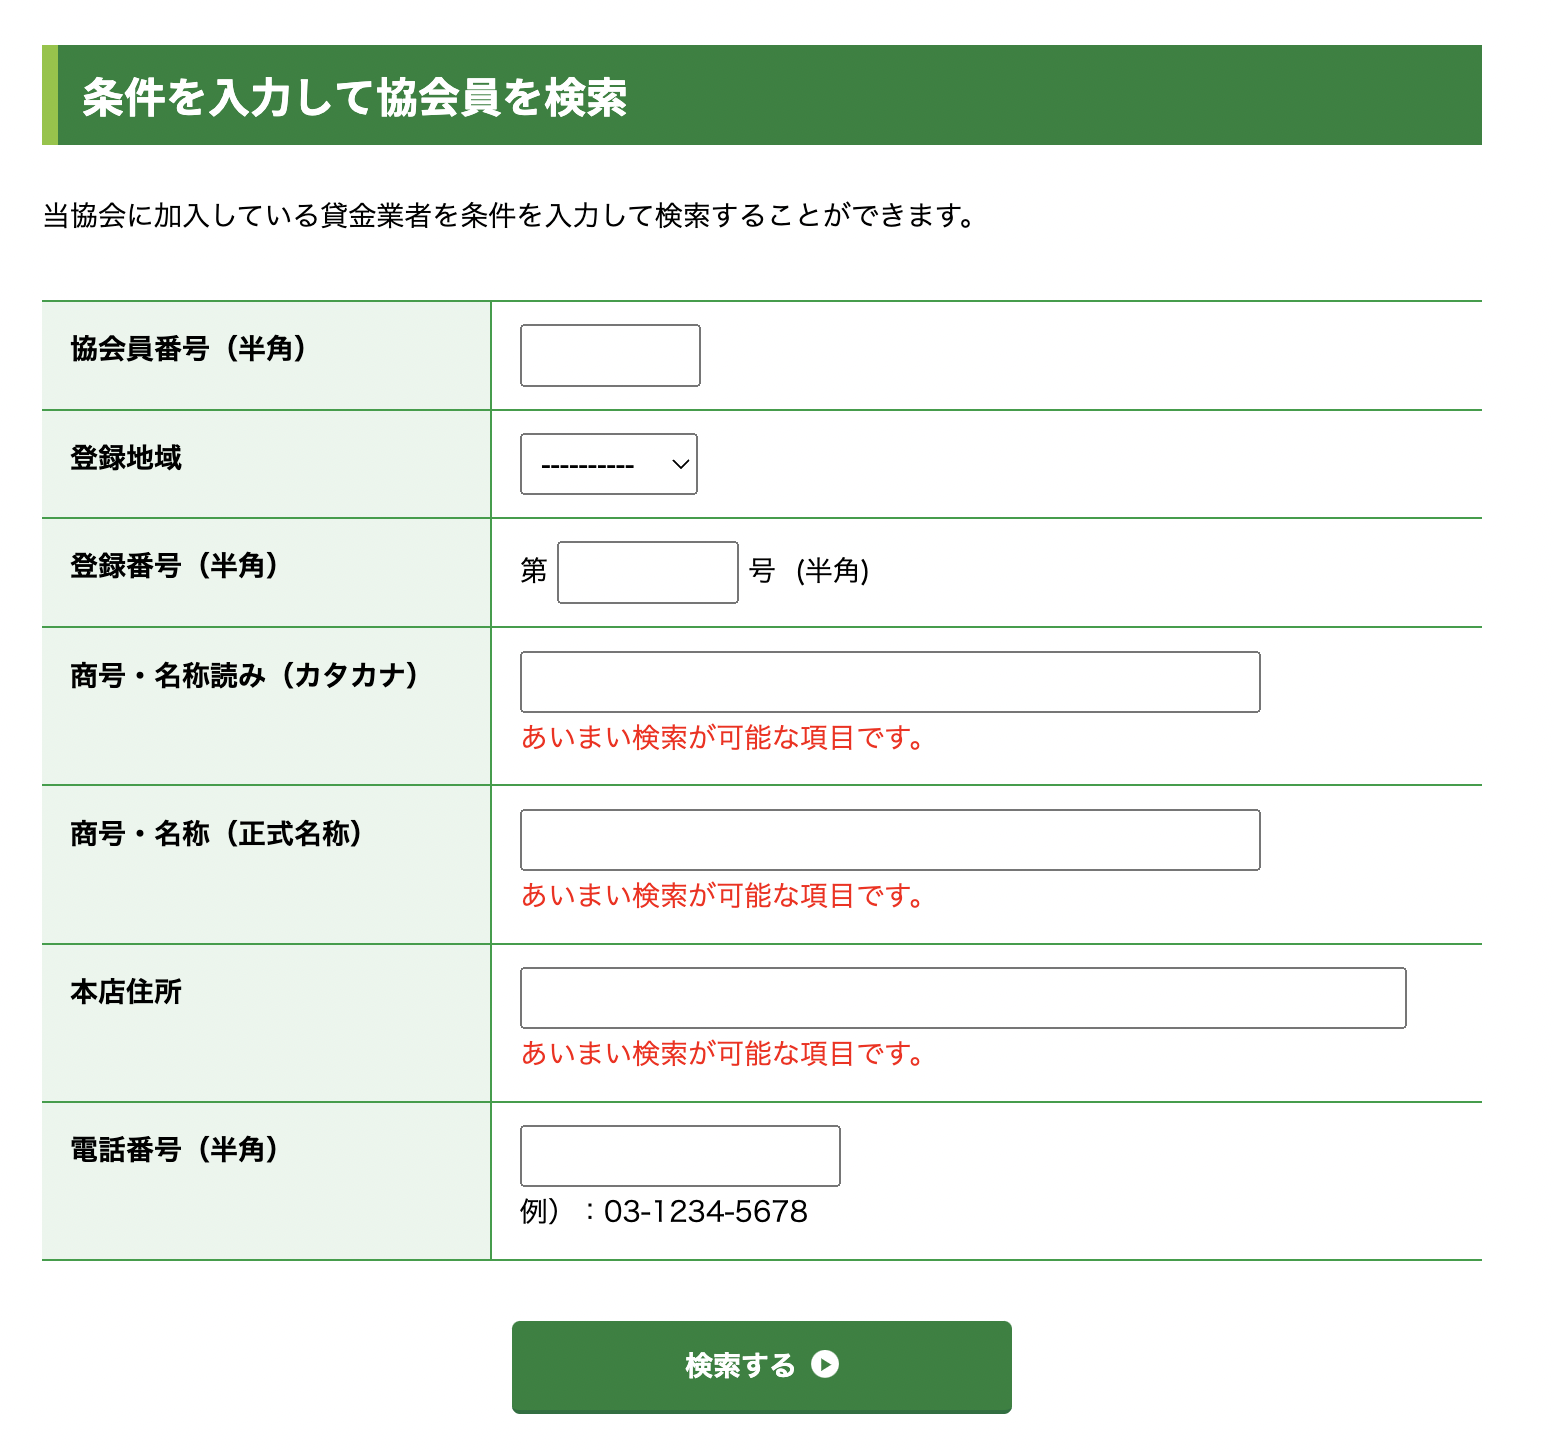 日本貸金業協会員検索ページスクリーンショット画像